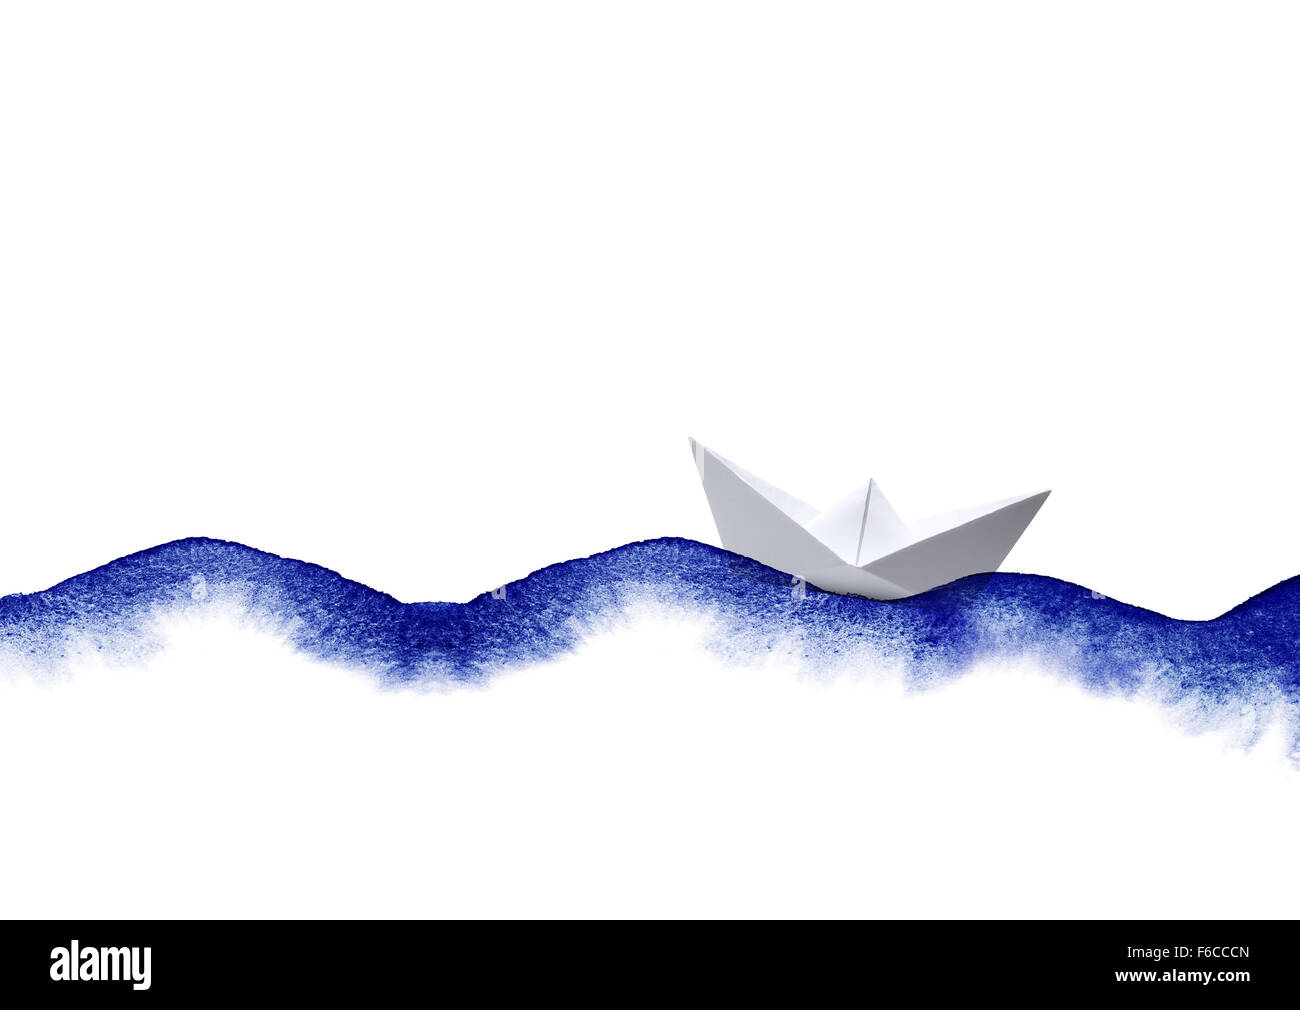 Des vagues d'aquarelle collage sur papier blanc bateau Banque D'Images